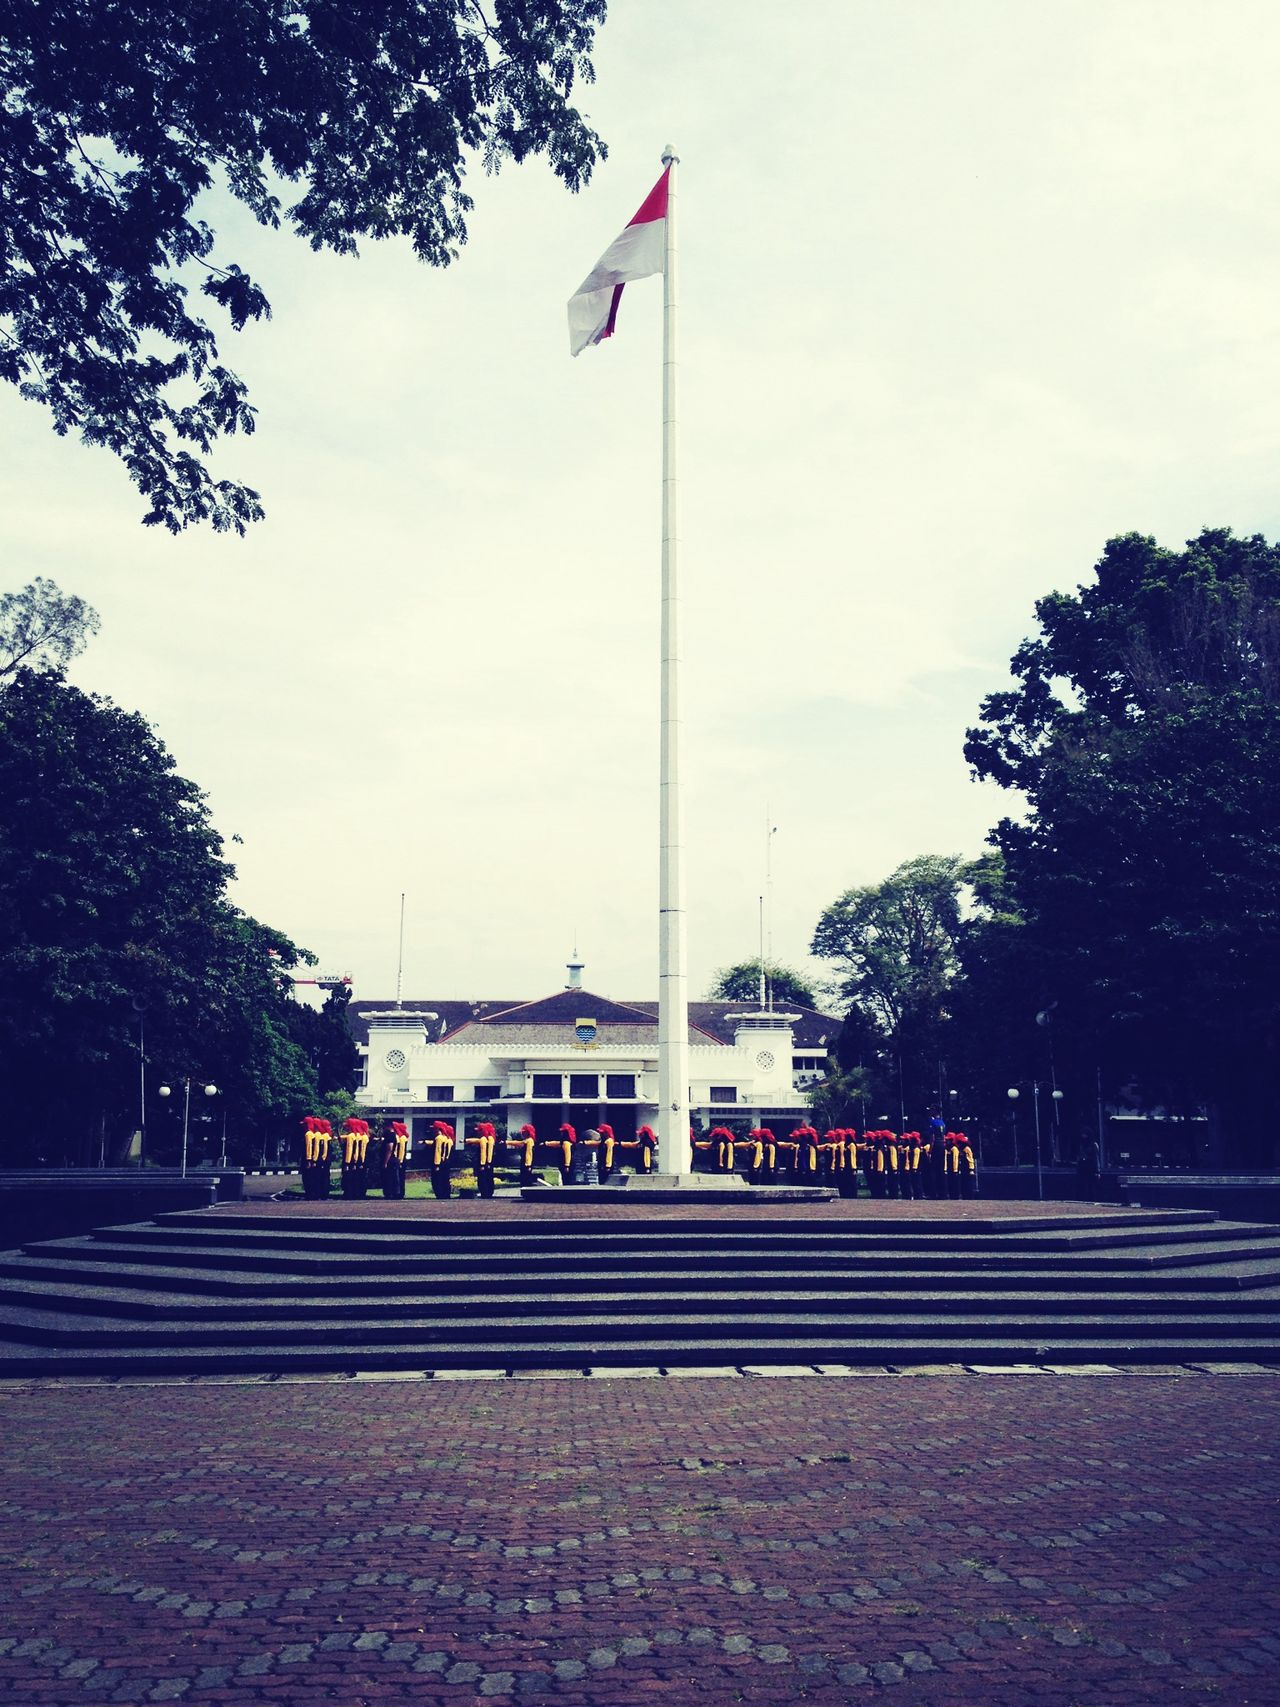 Balai Kota Bandung